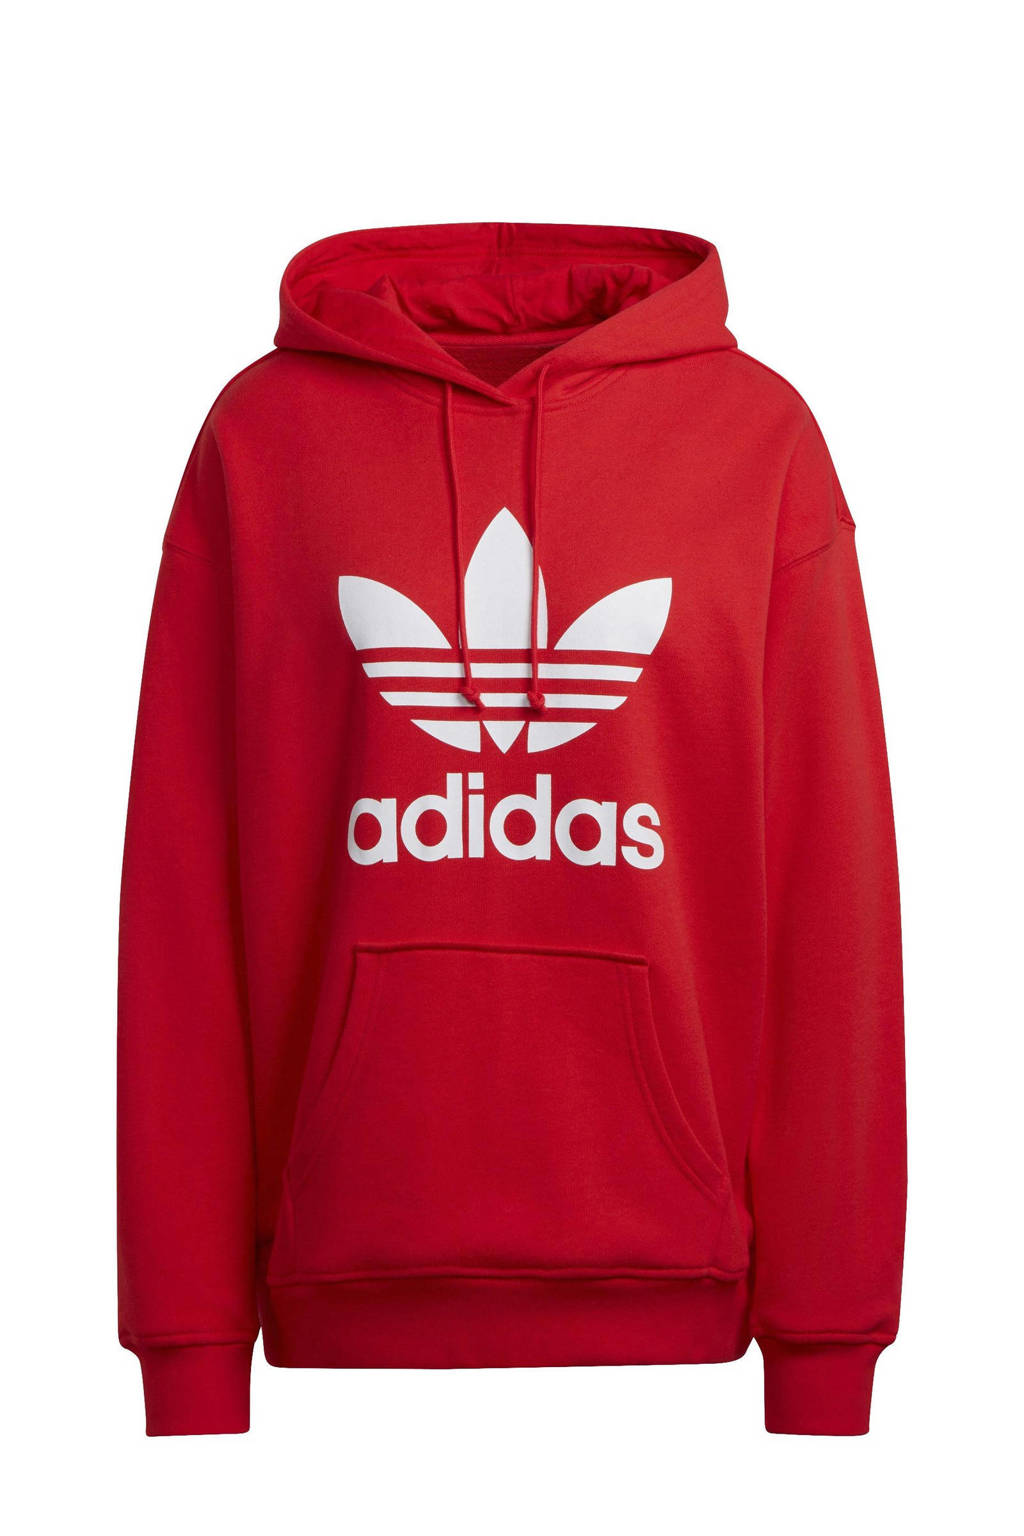 Rode dames adidas Originals Adicolor hoodie van katoen met logo dessin, lange mouwen, capuchon en geribde boorden